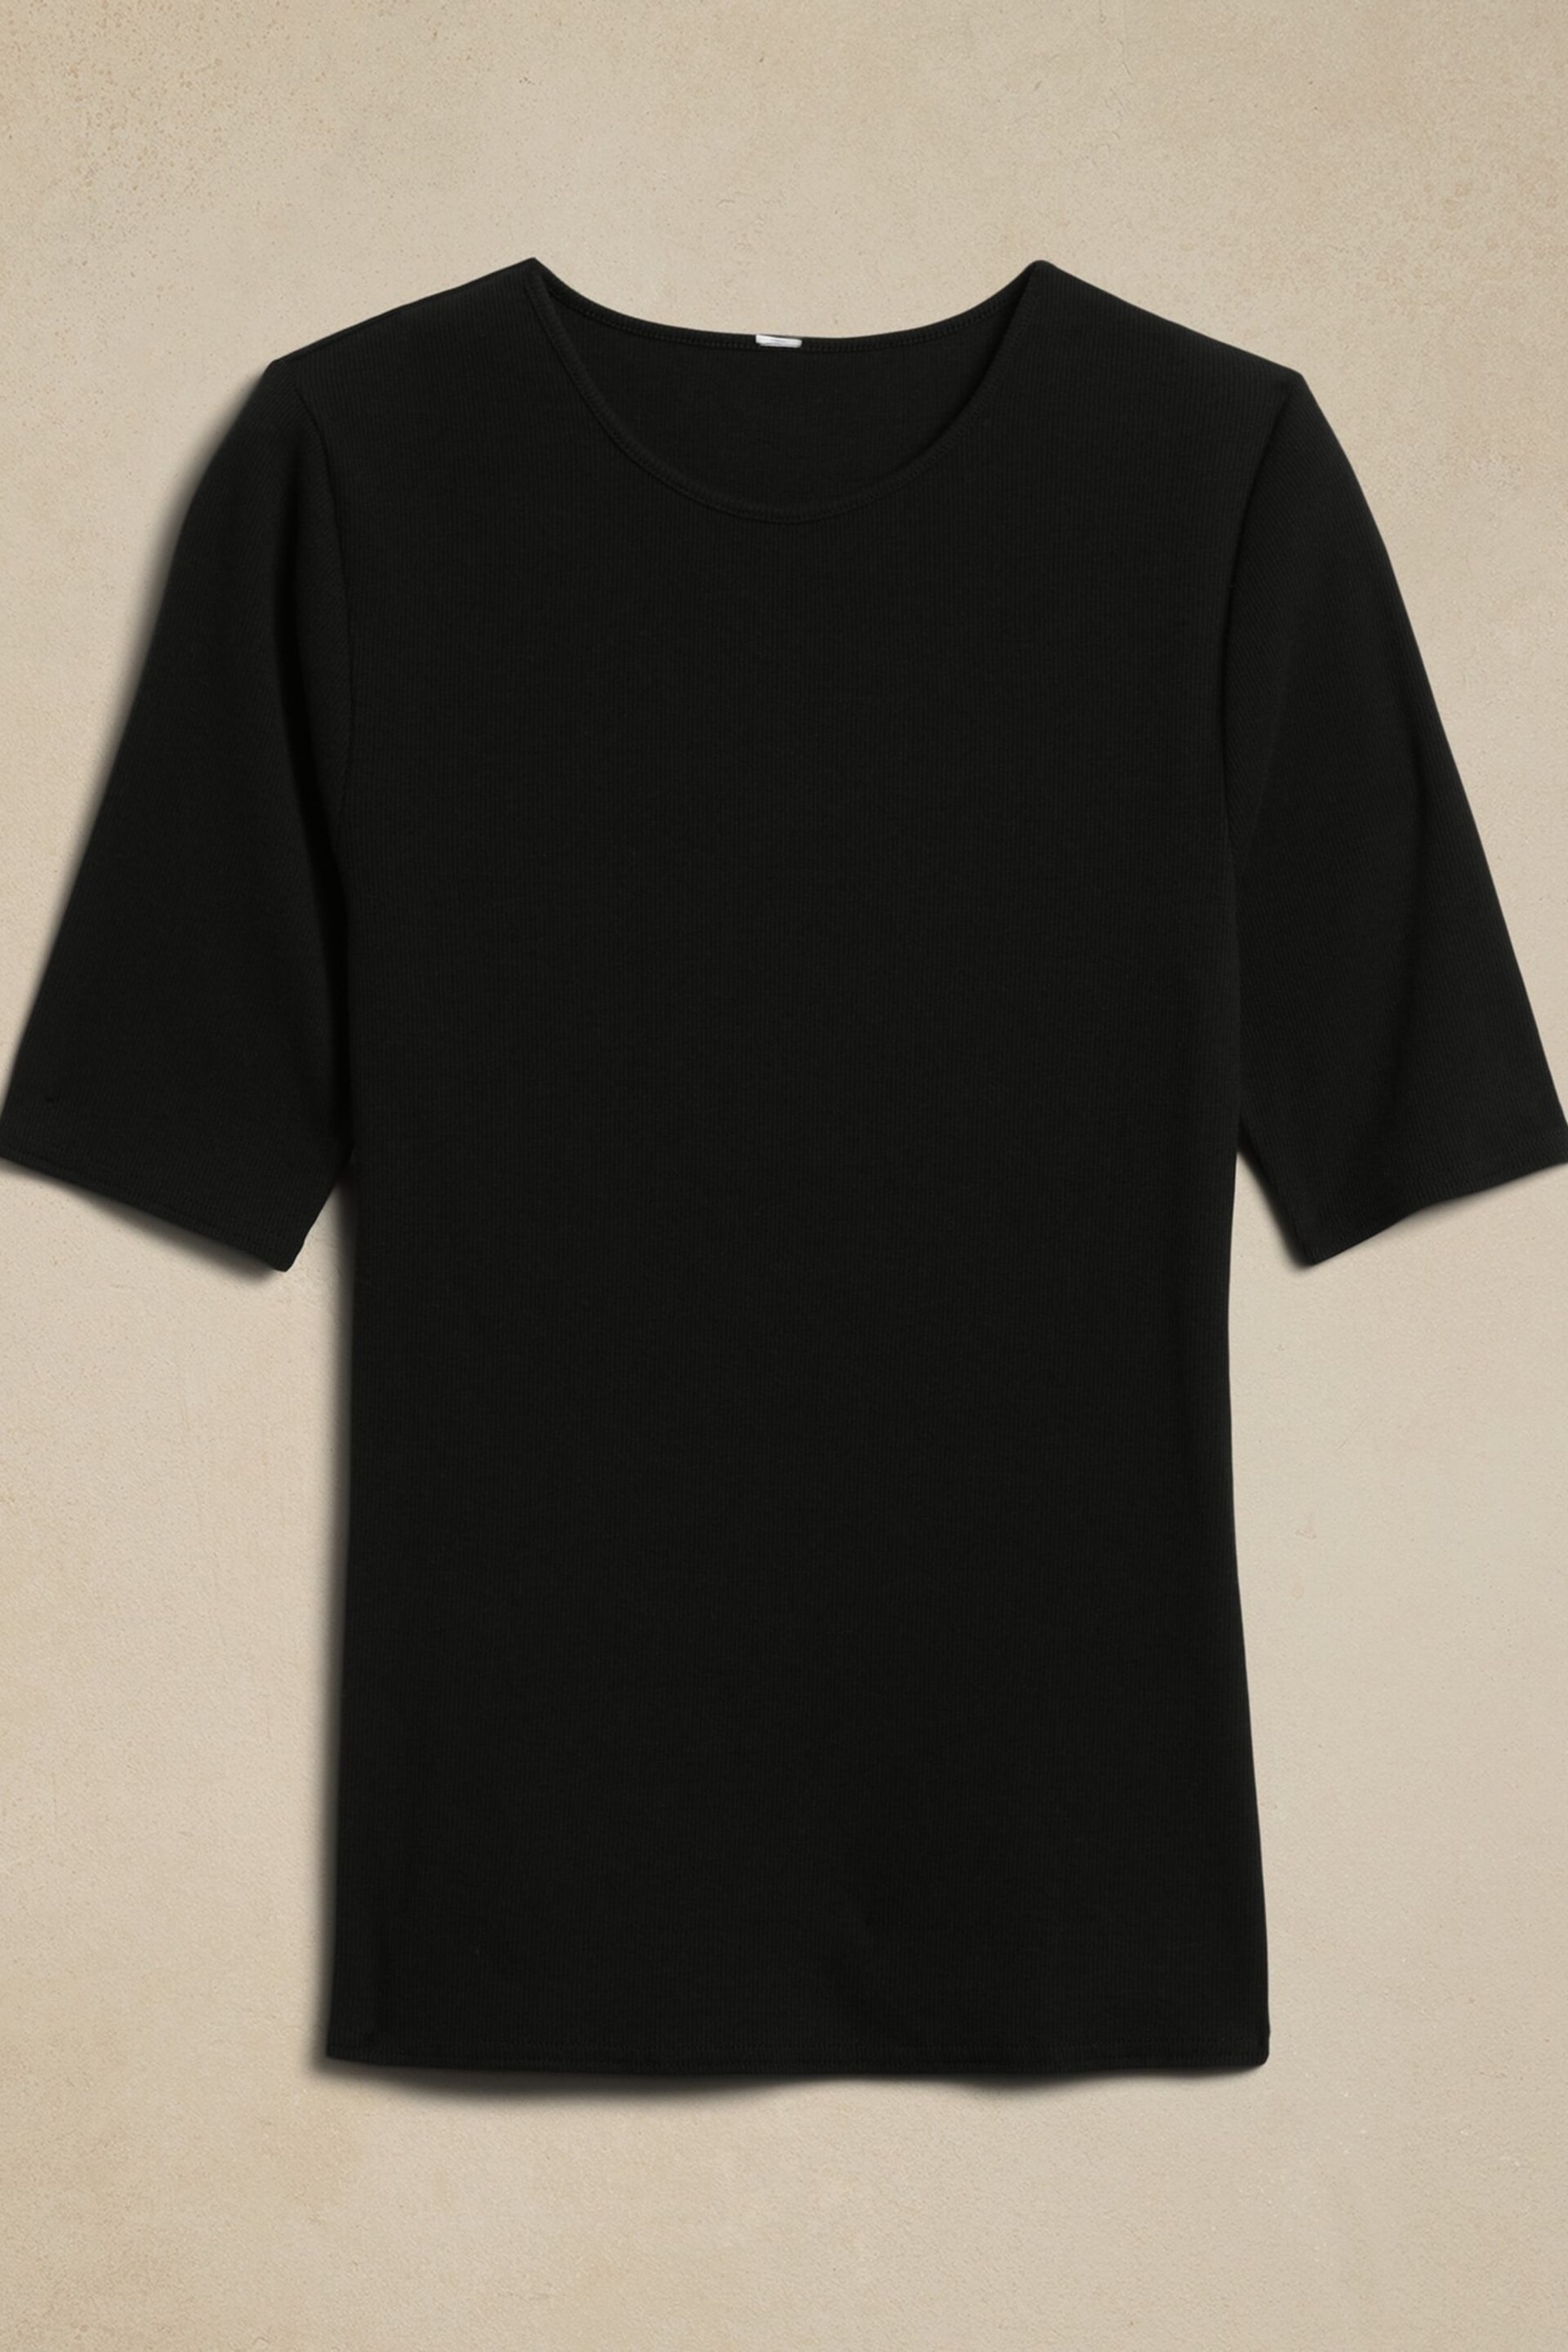 Banana Republic Black Ribbed Half-Sleeve T-Shirt - Image 2 of 2